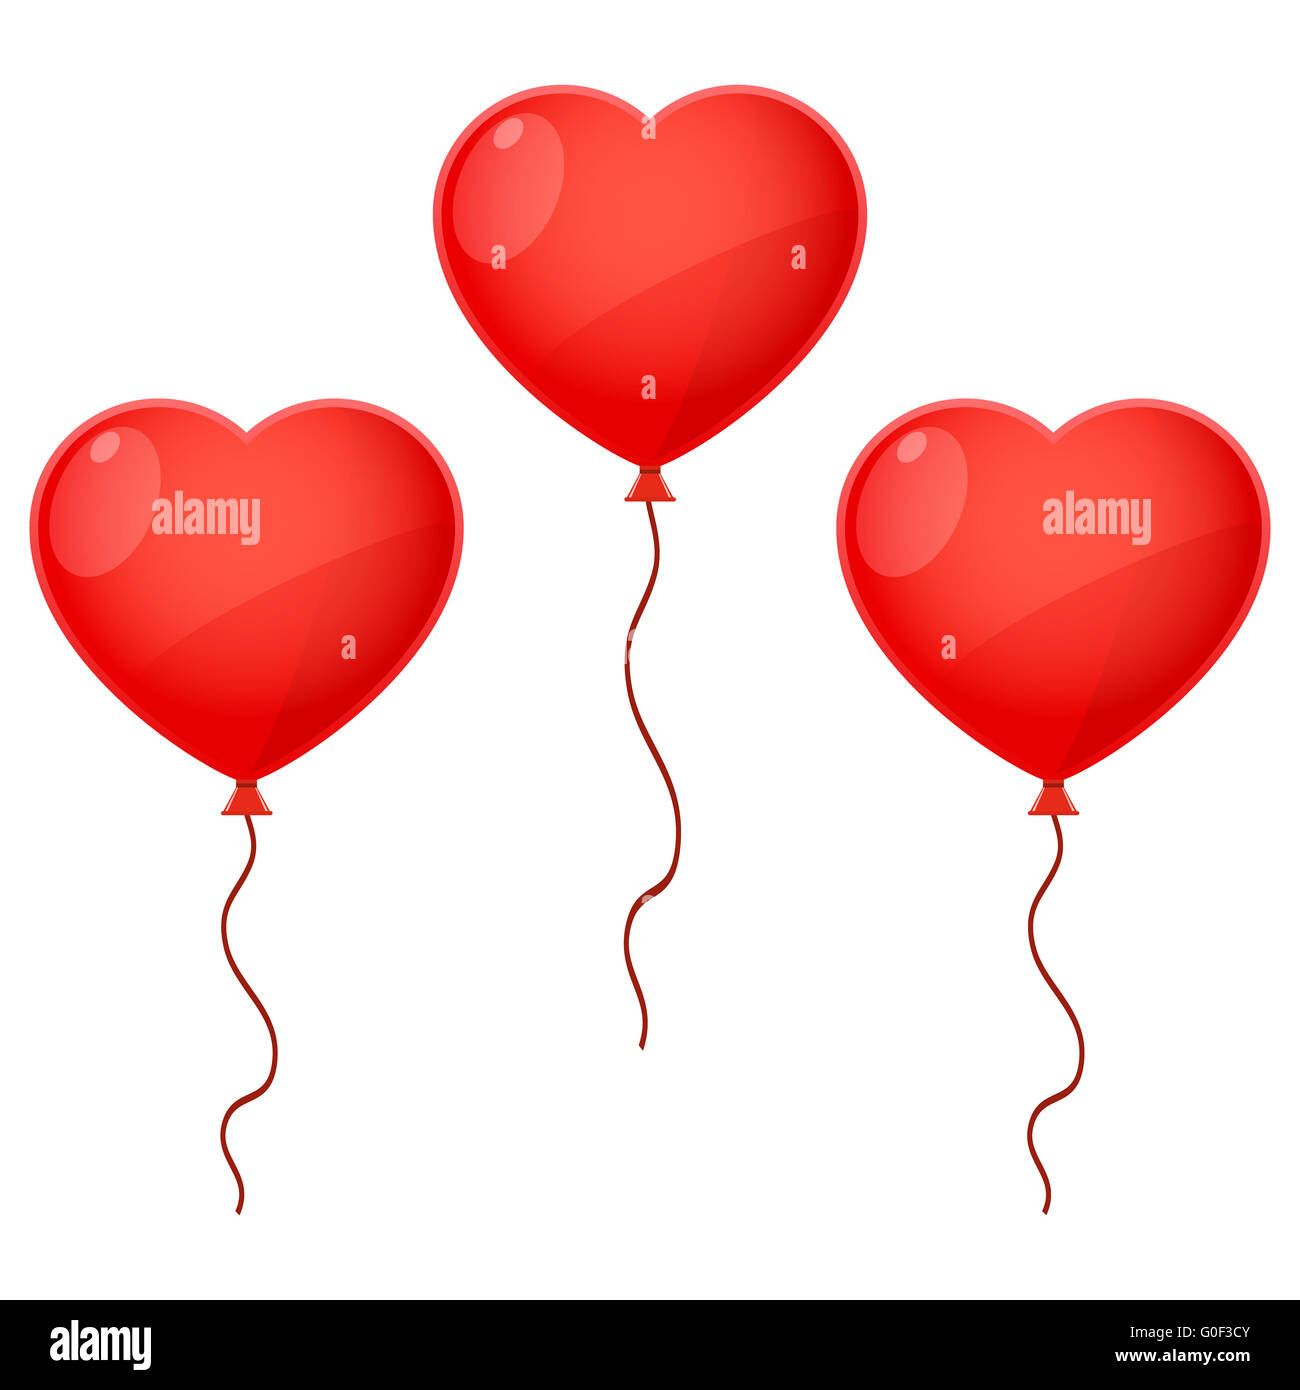 Three Balloon Hearts Stock Photo